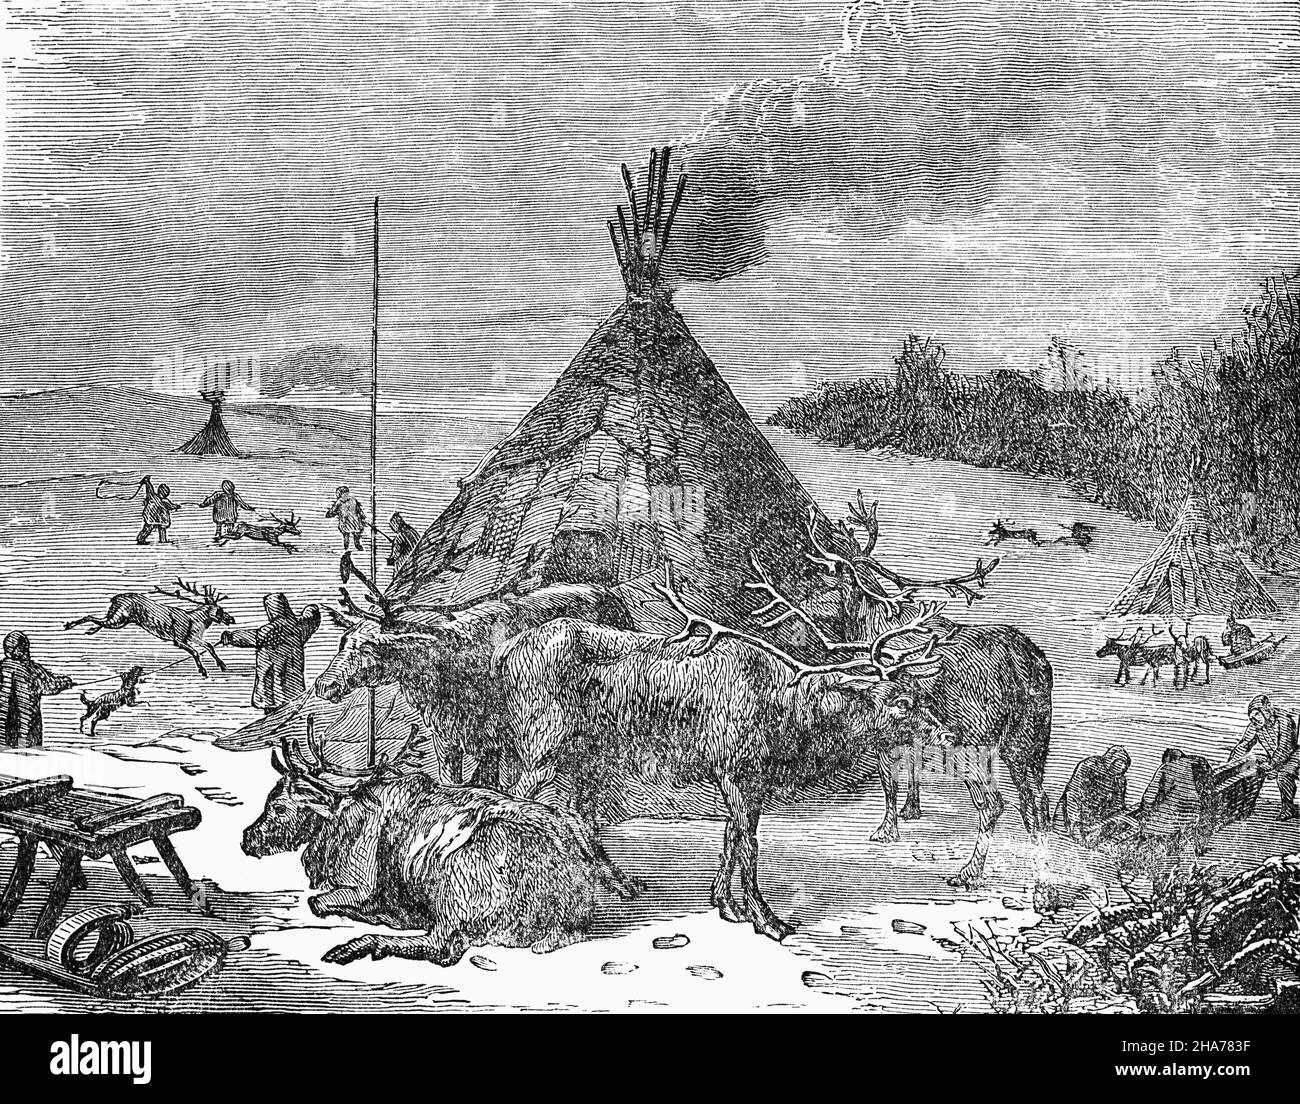 Eine Illustration einer finnischen samischen Siedlung mehrerer Familien aus dem späten 19th. Jahrhundert, genannt siida, ein altes Gemeinschaftssystem. Sie lebten in Lavvus, traditionellen Zelten mit einer Haut, die um einen Kegel von Stützstangen gewickelt war, die Kerben und Gabeln haben, um sie zusammenzuhalten. Siida-Mitglieder halfen sich gegenseitig bei der Verwaltung von Rentierherden, die für den Transport, die Milch- und Fleischproduktion verwendet werden, aber Häute, Knochen und Hörner sind wichtige Rohstoffe für die Herstellung von Kleidung und Kunsthandwerk. Stockfoto